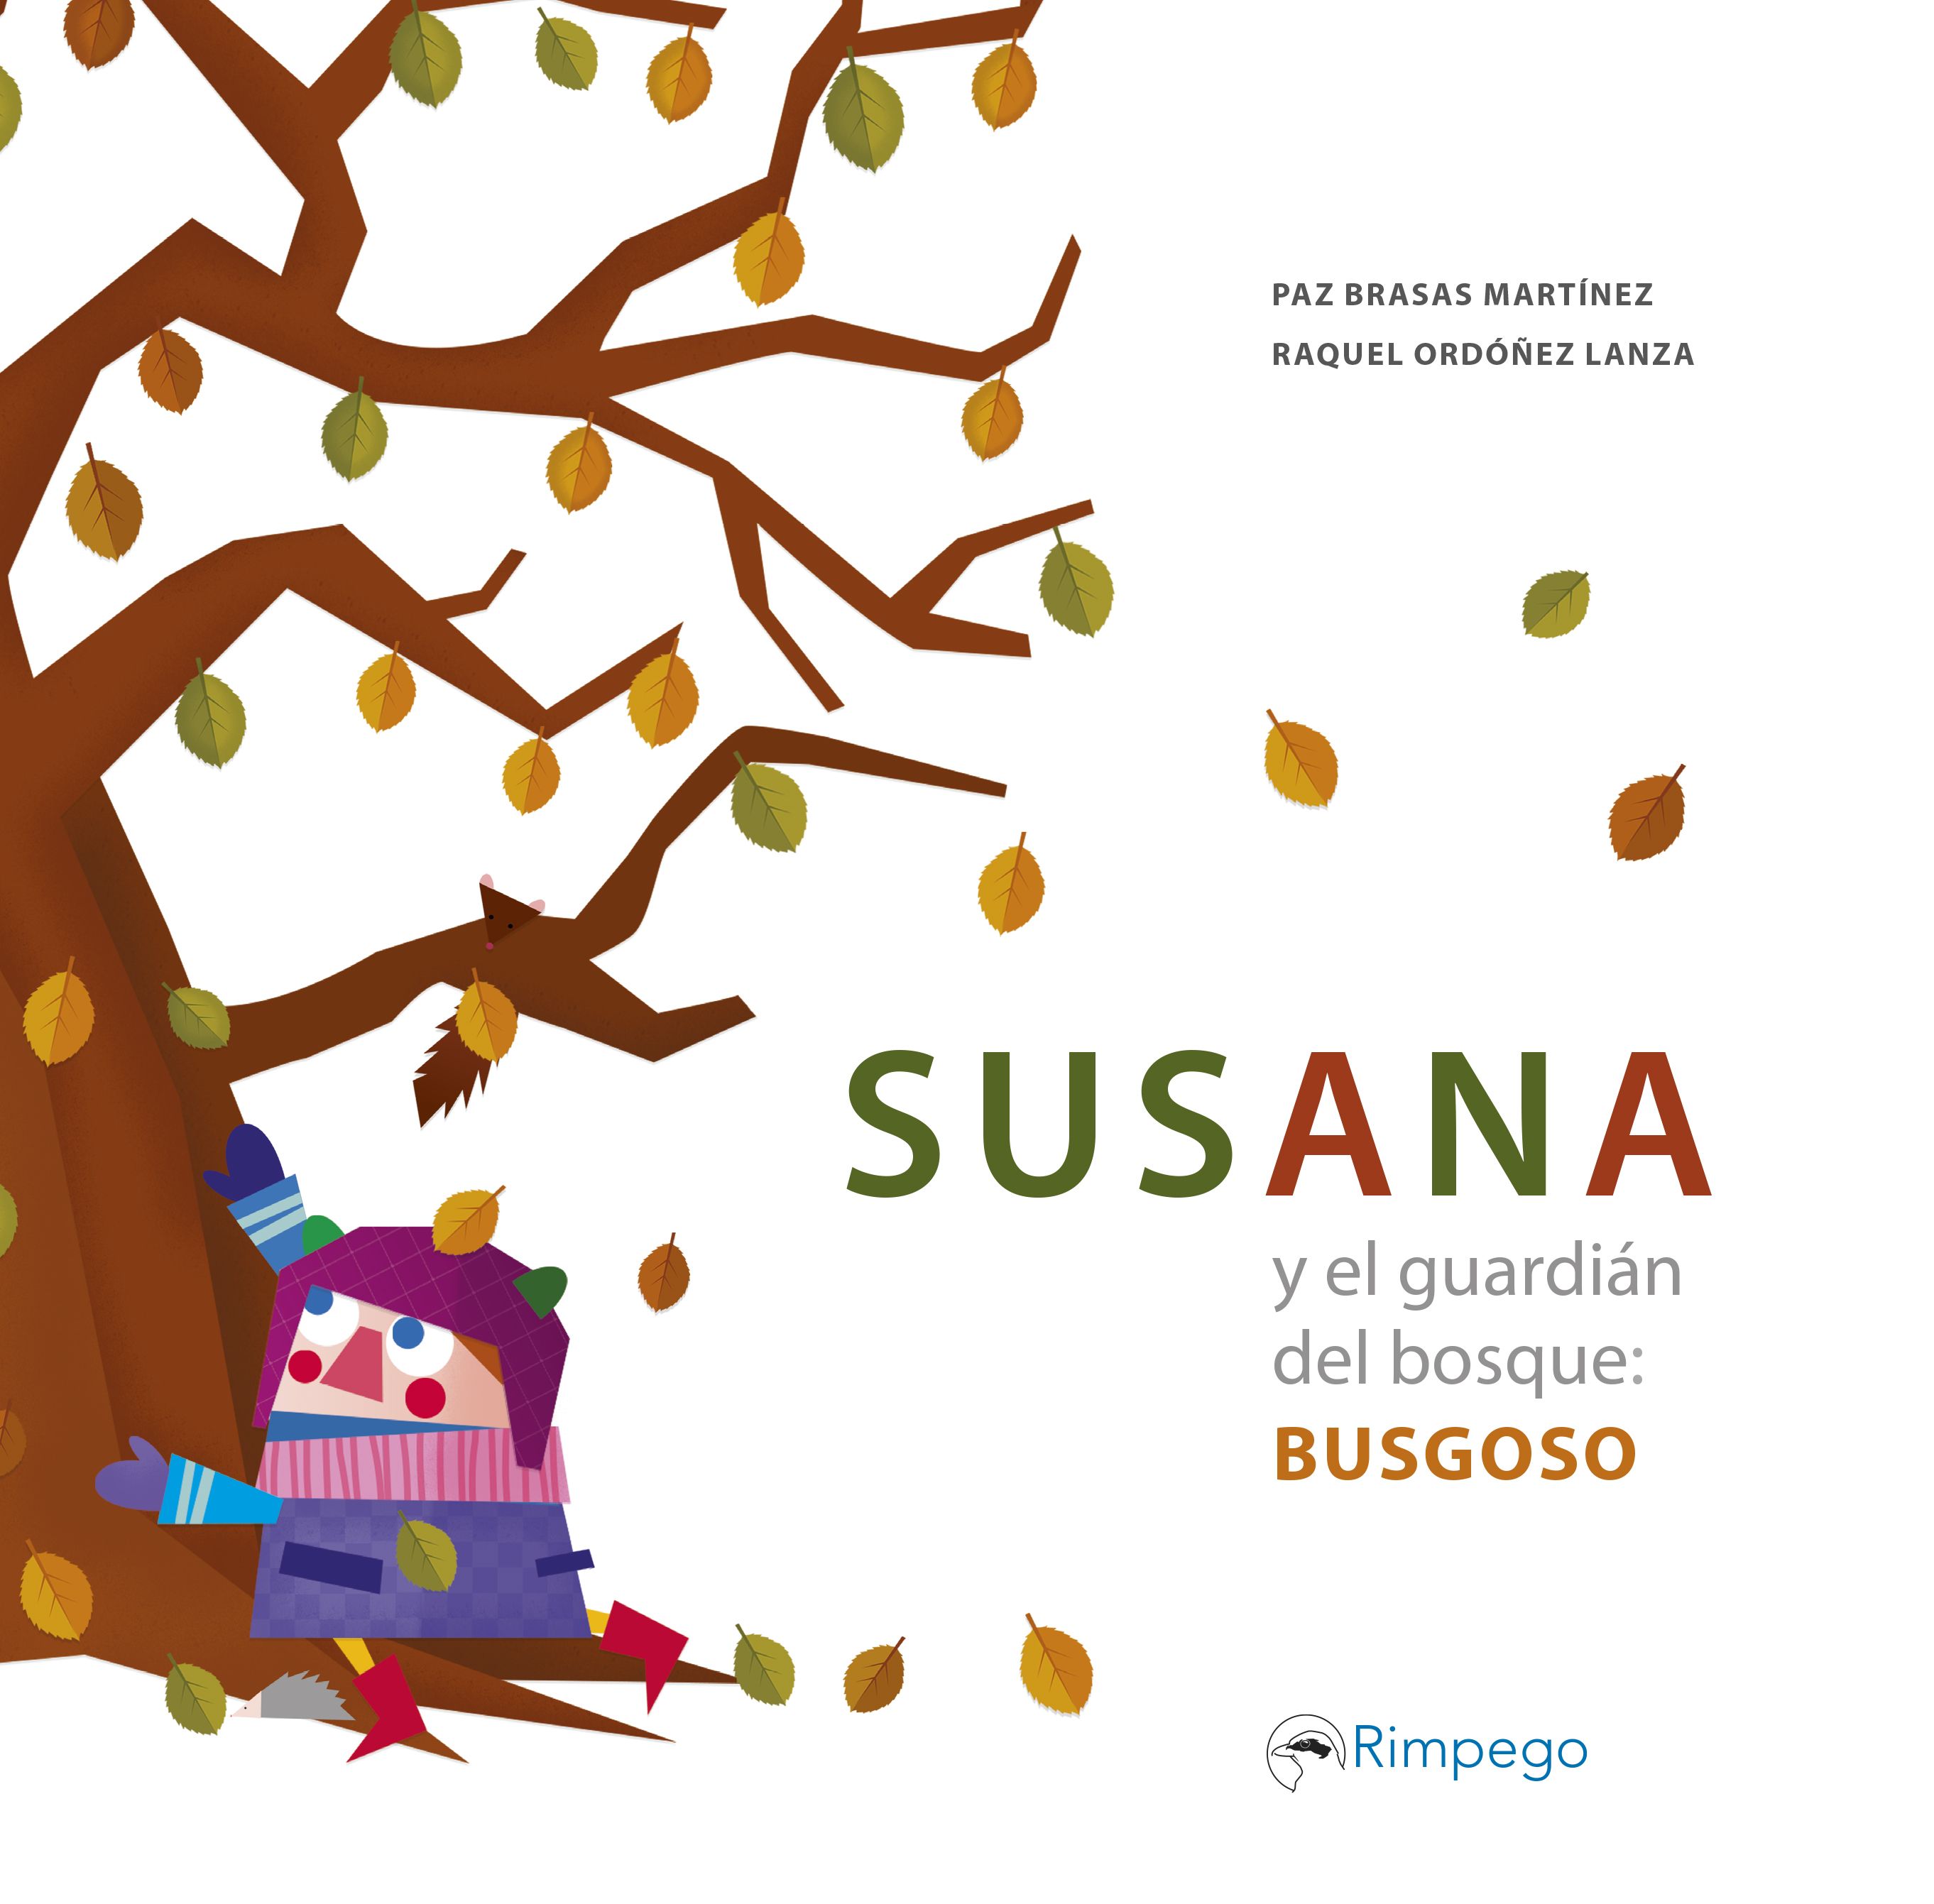  Susana y el guardián del bosqueBUSGOSO